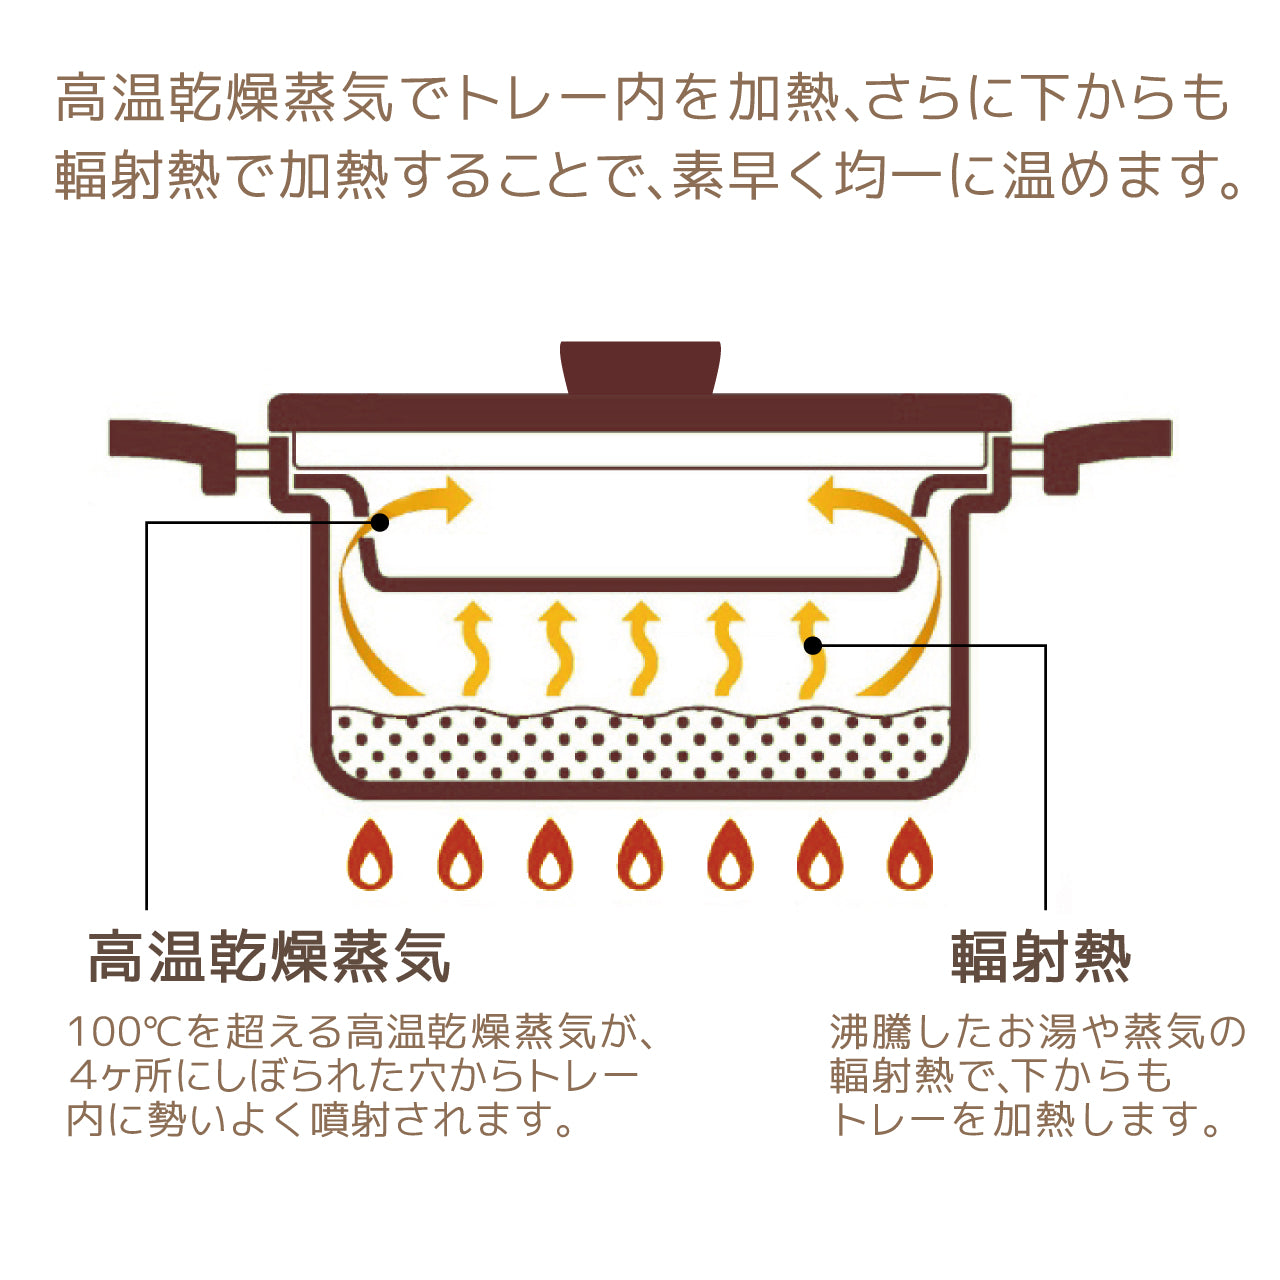 ドライ スチーマー 関西軽金属工業(株) - 調理器具